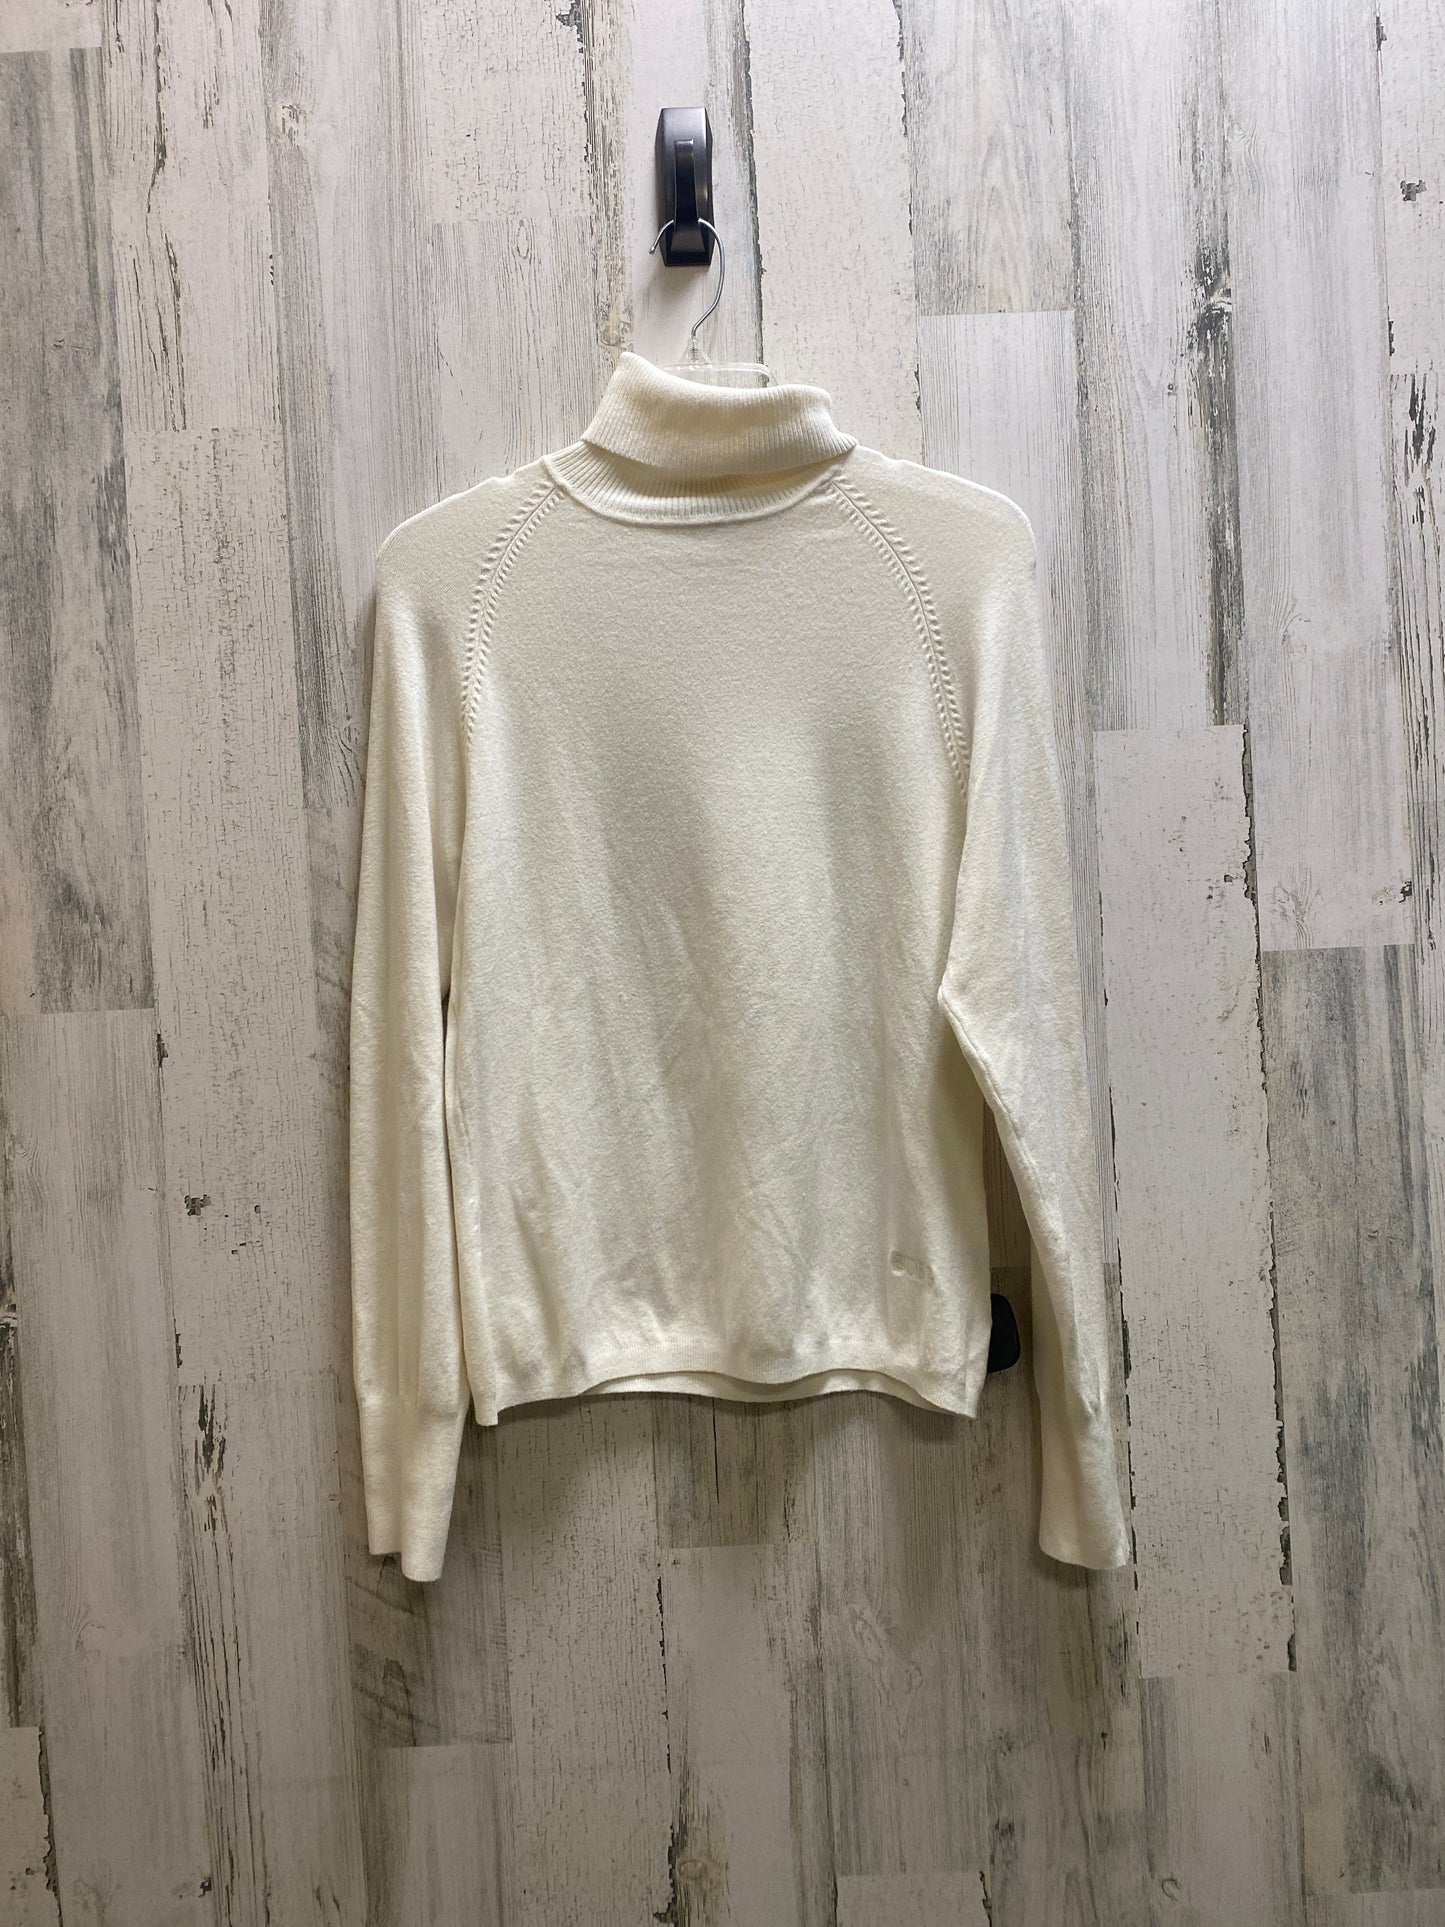 Sweater By Bcbgmaxazria  Size: Xl